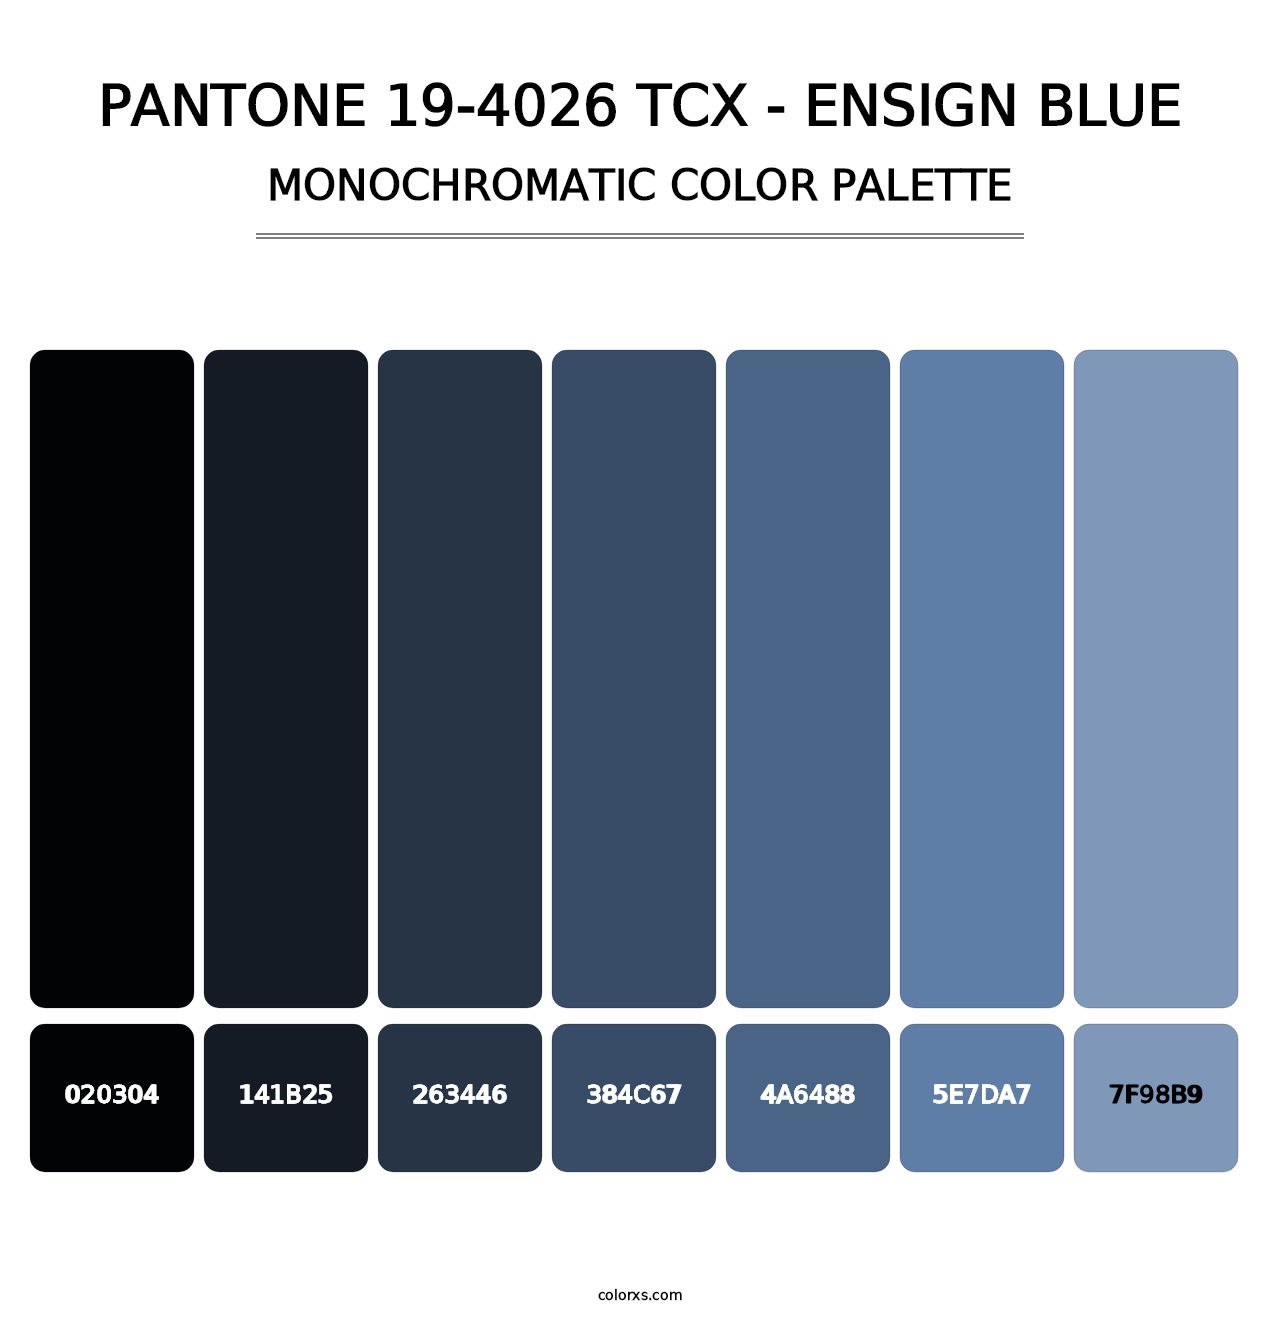 PANTONE 19-4026 TCX - Ensign Blue - Monochromatic Color Palette